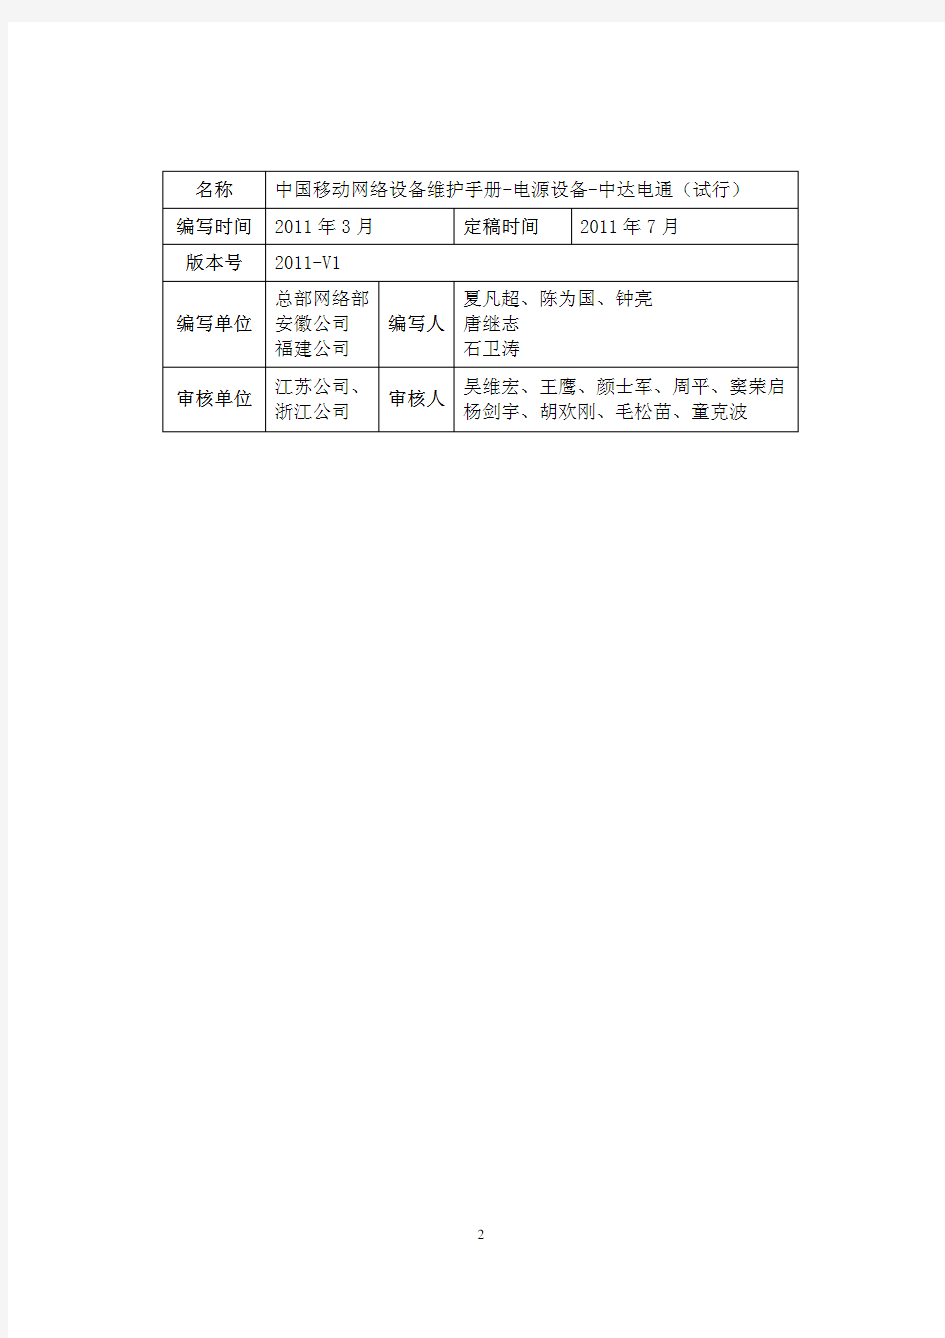 精品12中国移动网络设备维护手册-开关电源-中达电通(试行)优秀